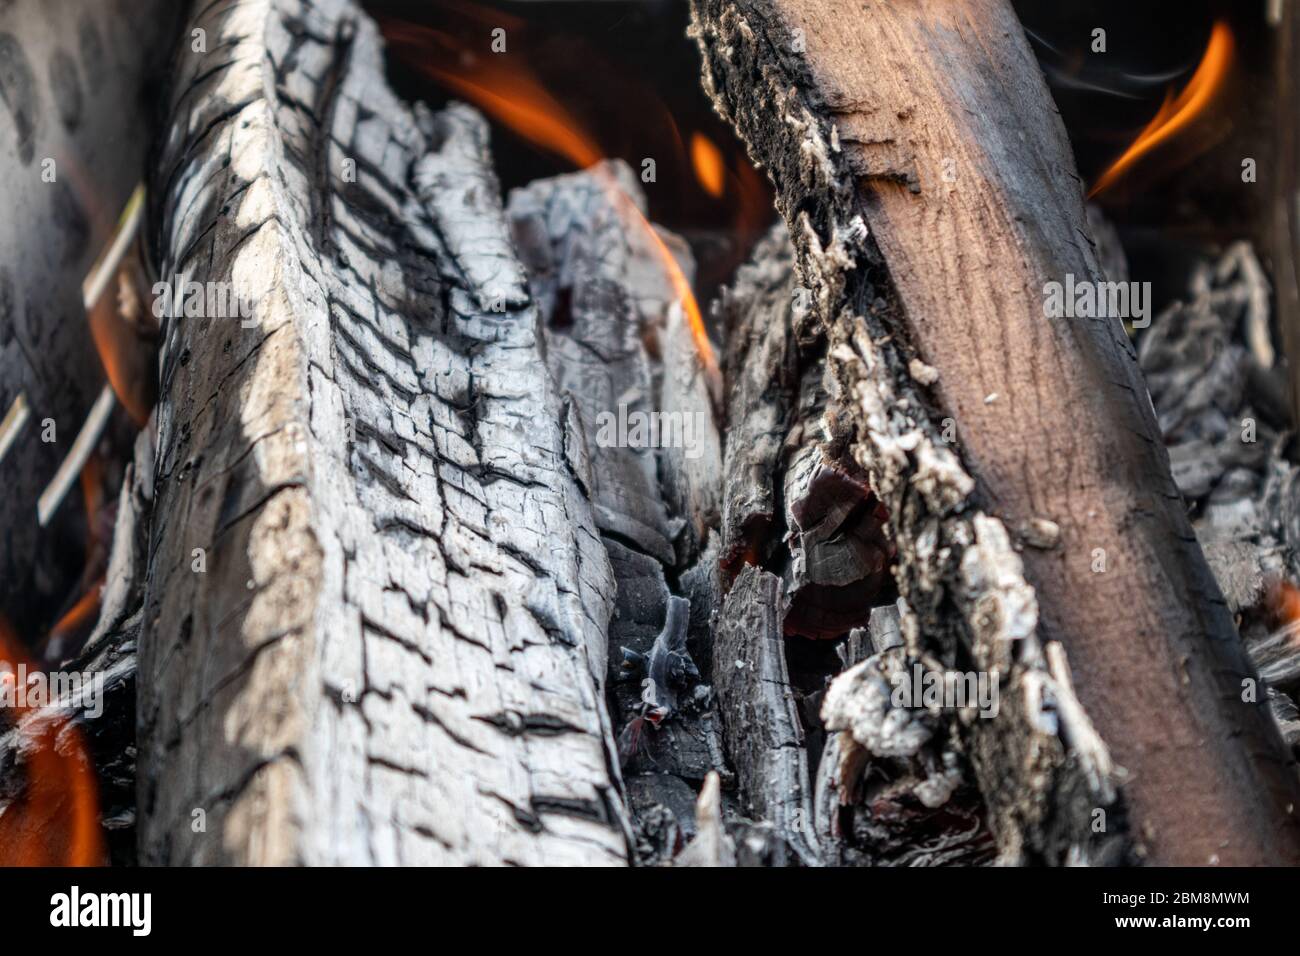 Charbon gris de bois brûlé avec petit feu de bois rouge orange chaud sur les branches brûlant de près. Flammes chaudes sur le charbon Banque D'Images